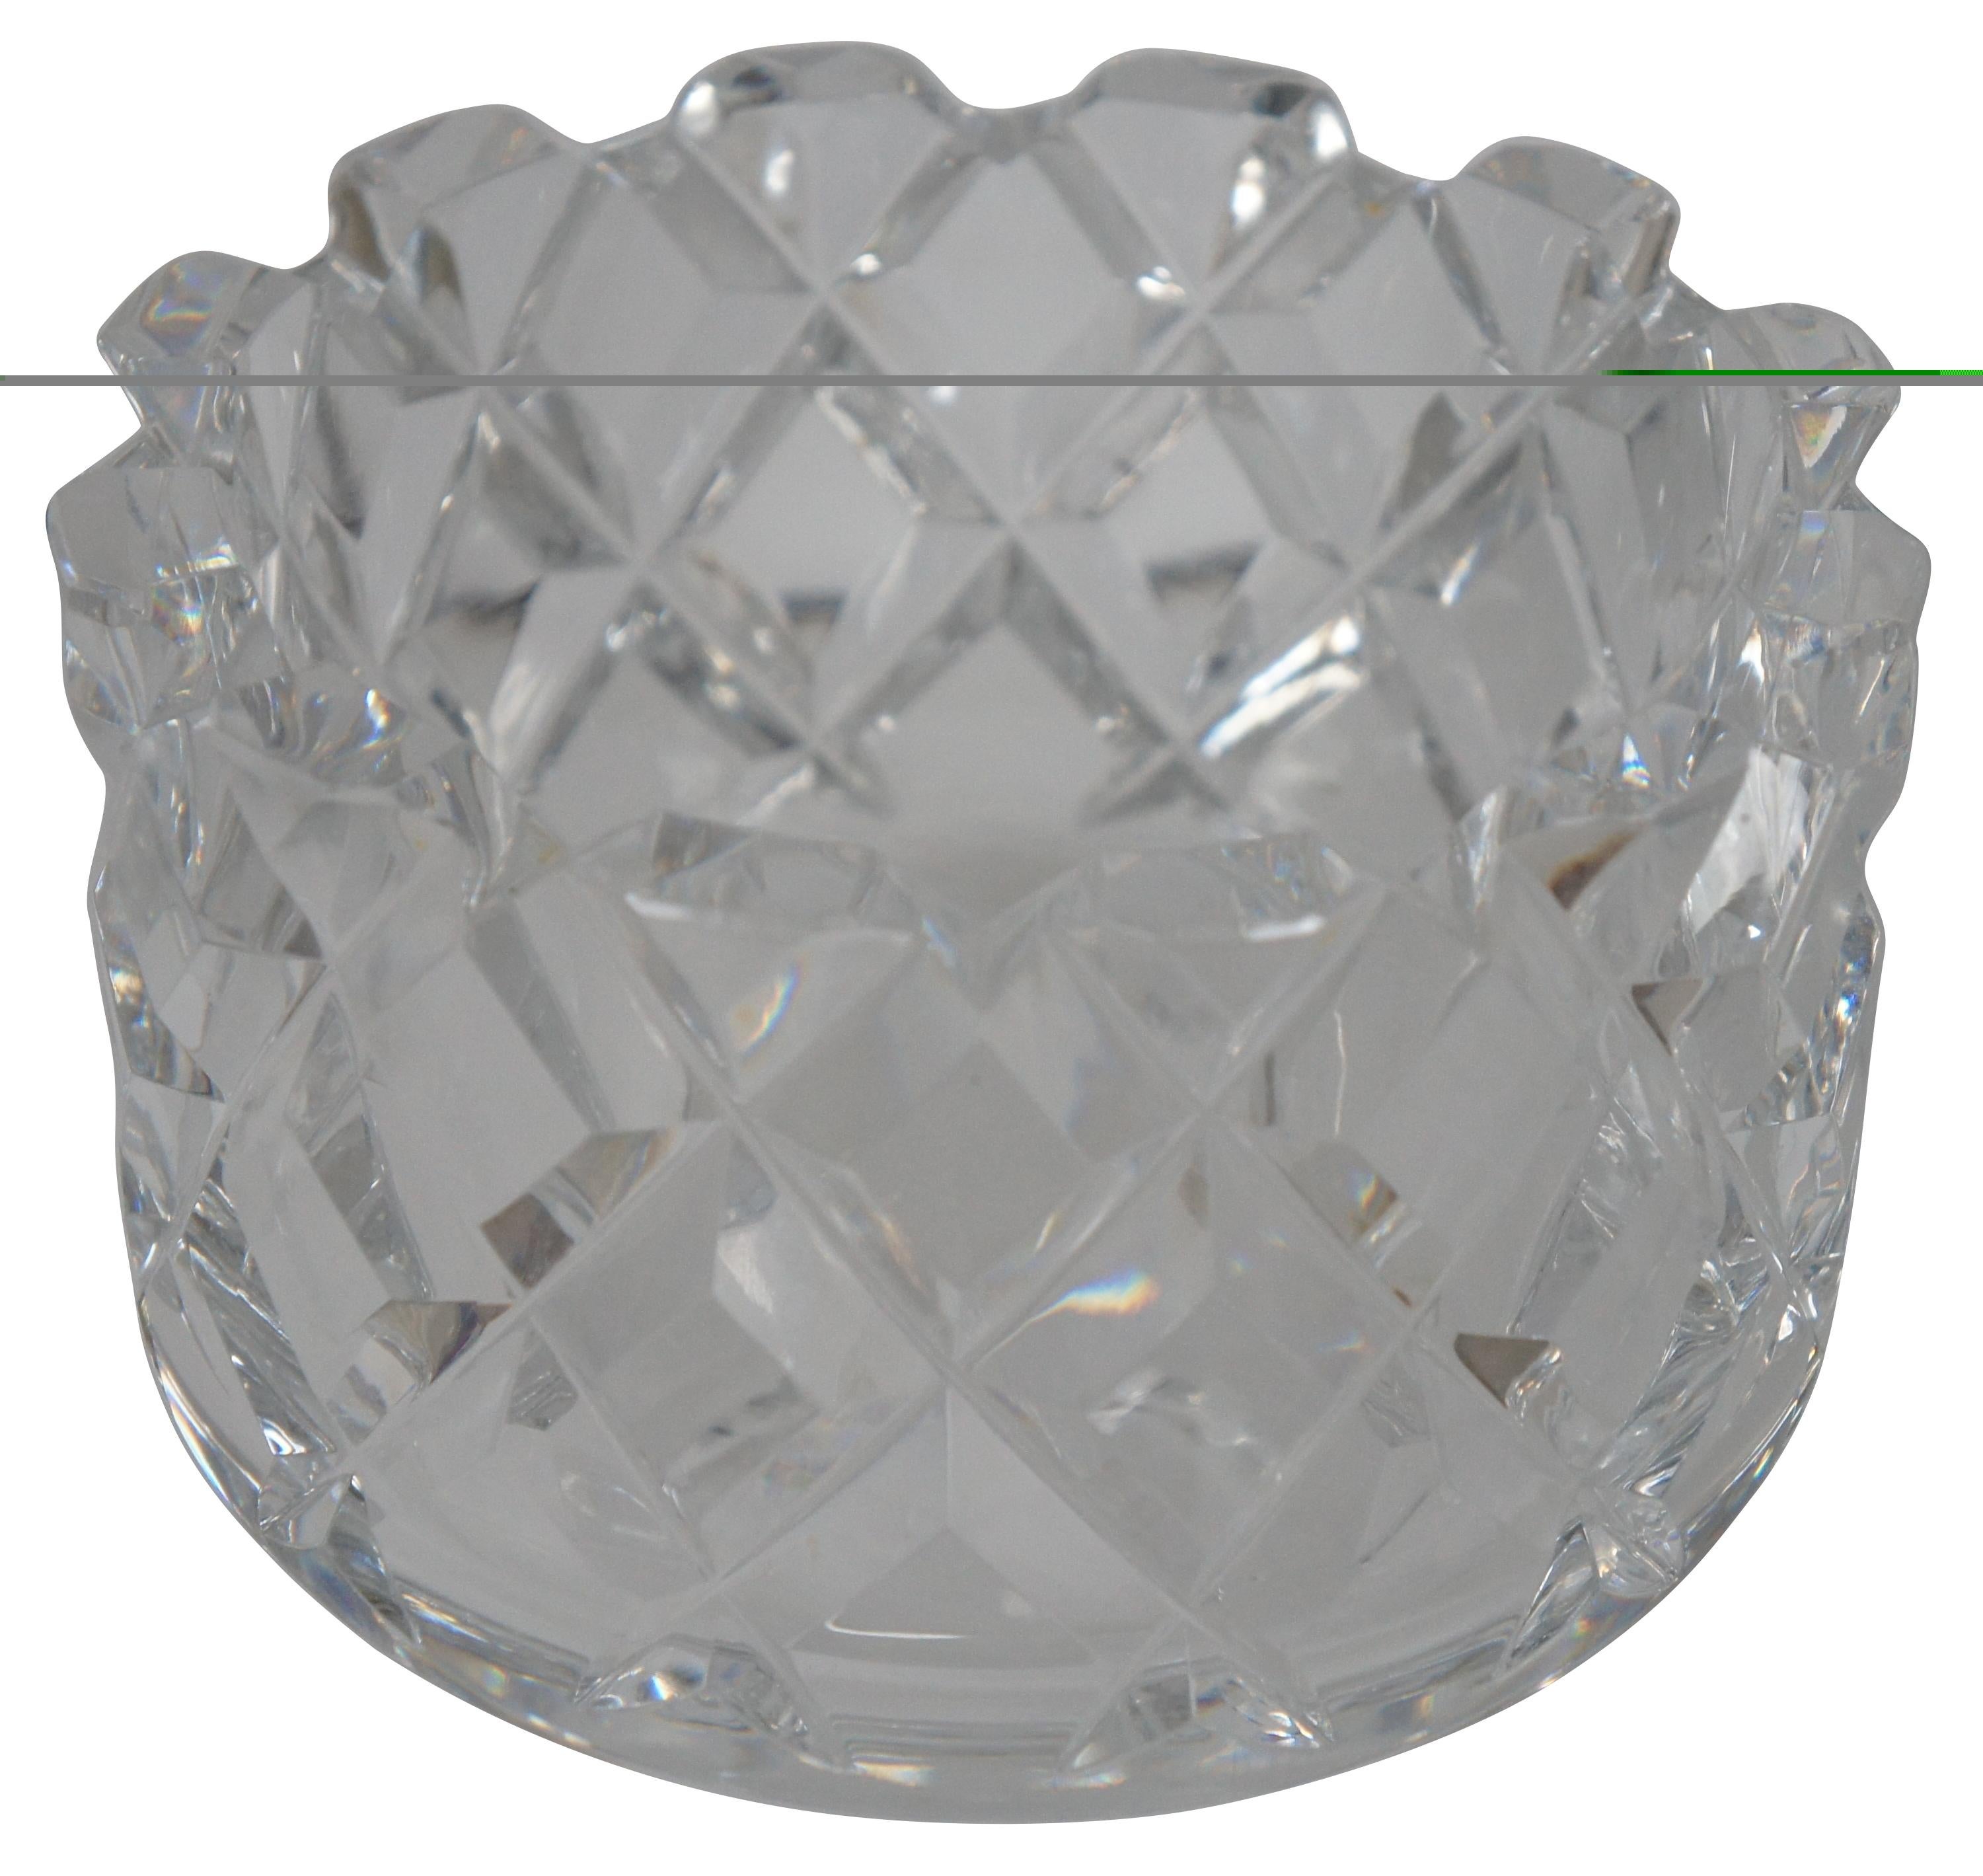 Vintage Orrefors Sofiero cut crystal dish #3834-121 designed by Gunnar Cyren.